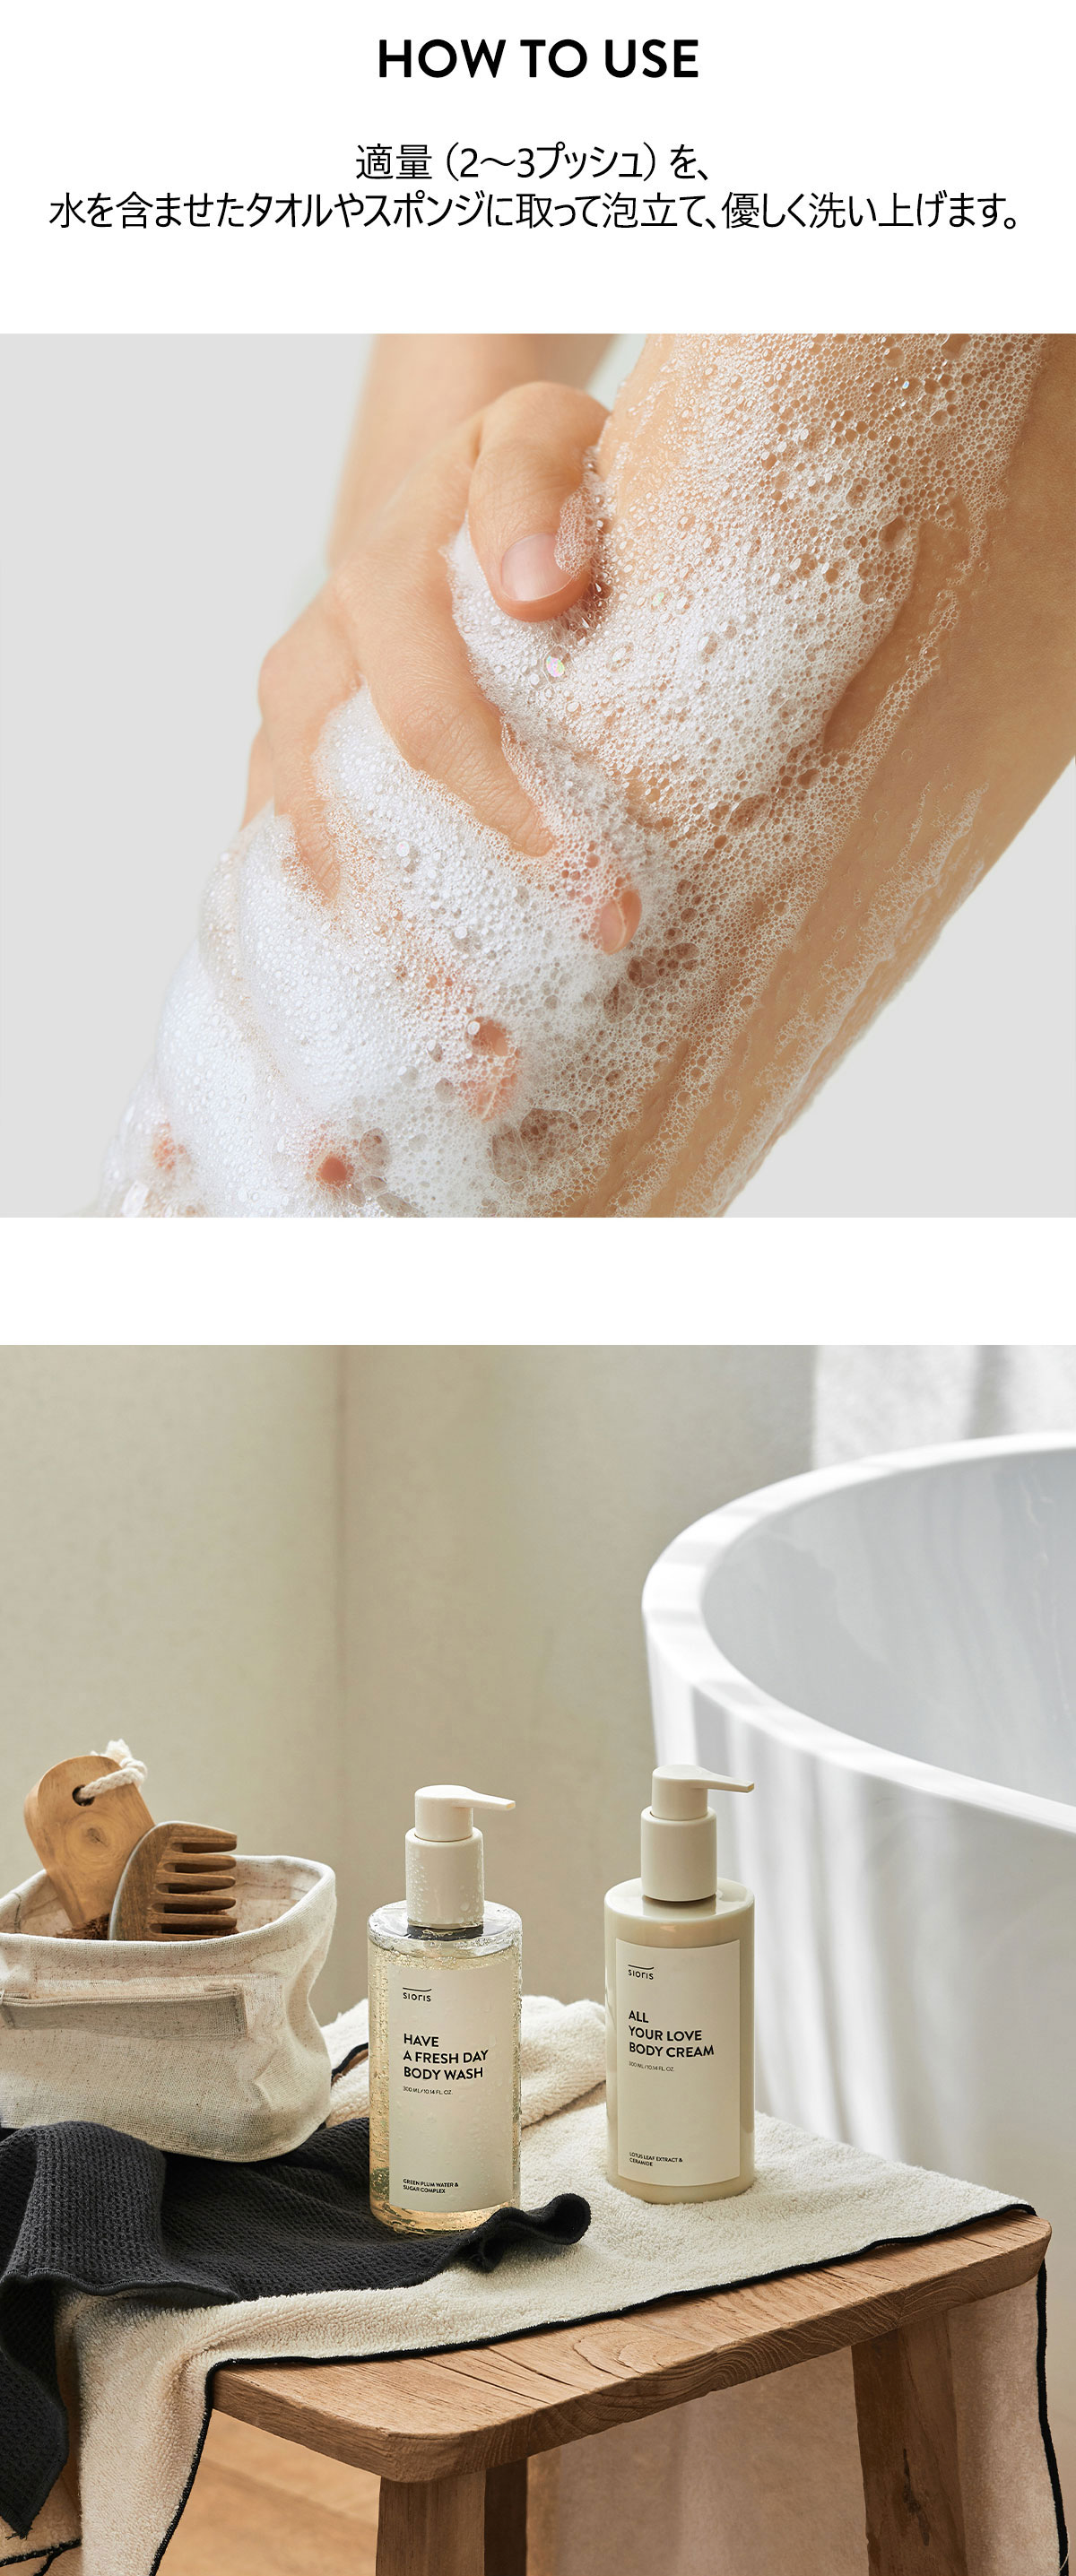 適量（2～3プッシュ）を、水を含ませたタオルやスポンジに取って泡立て、優しく洗い上げます。
